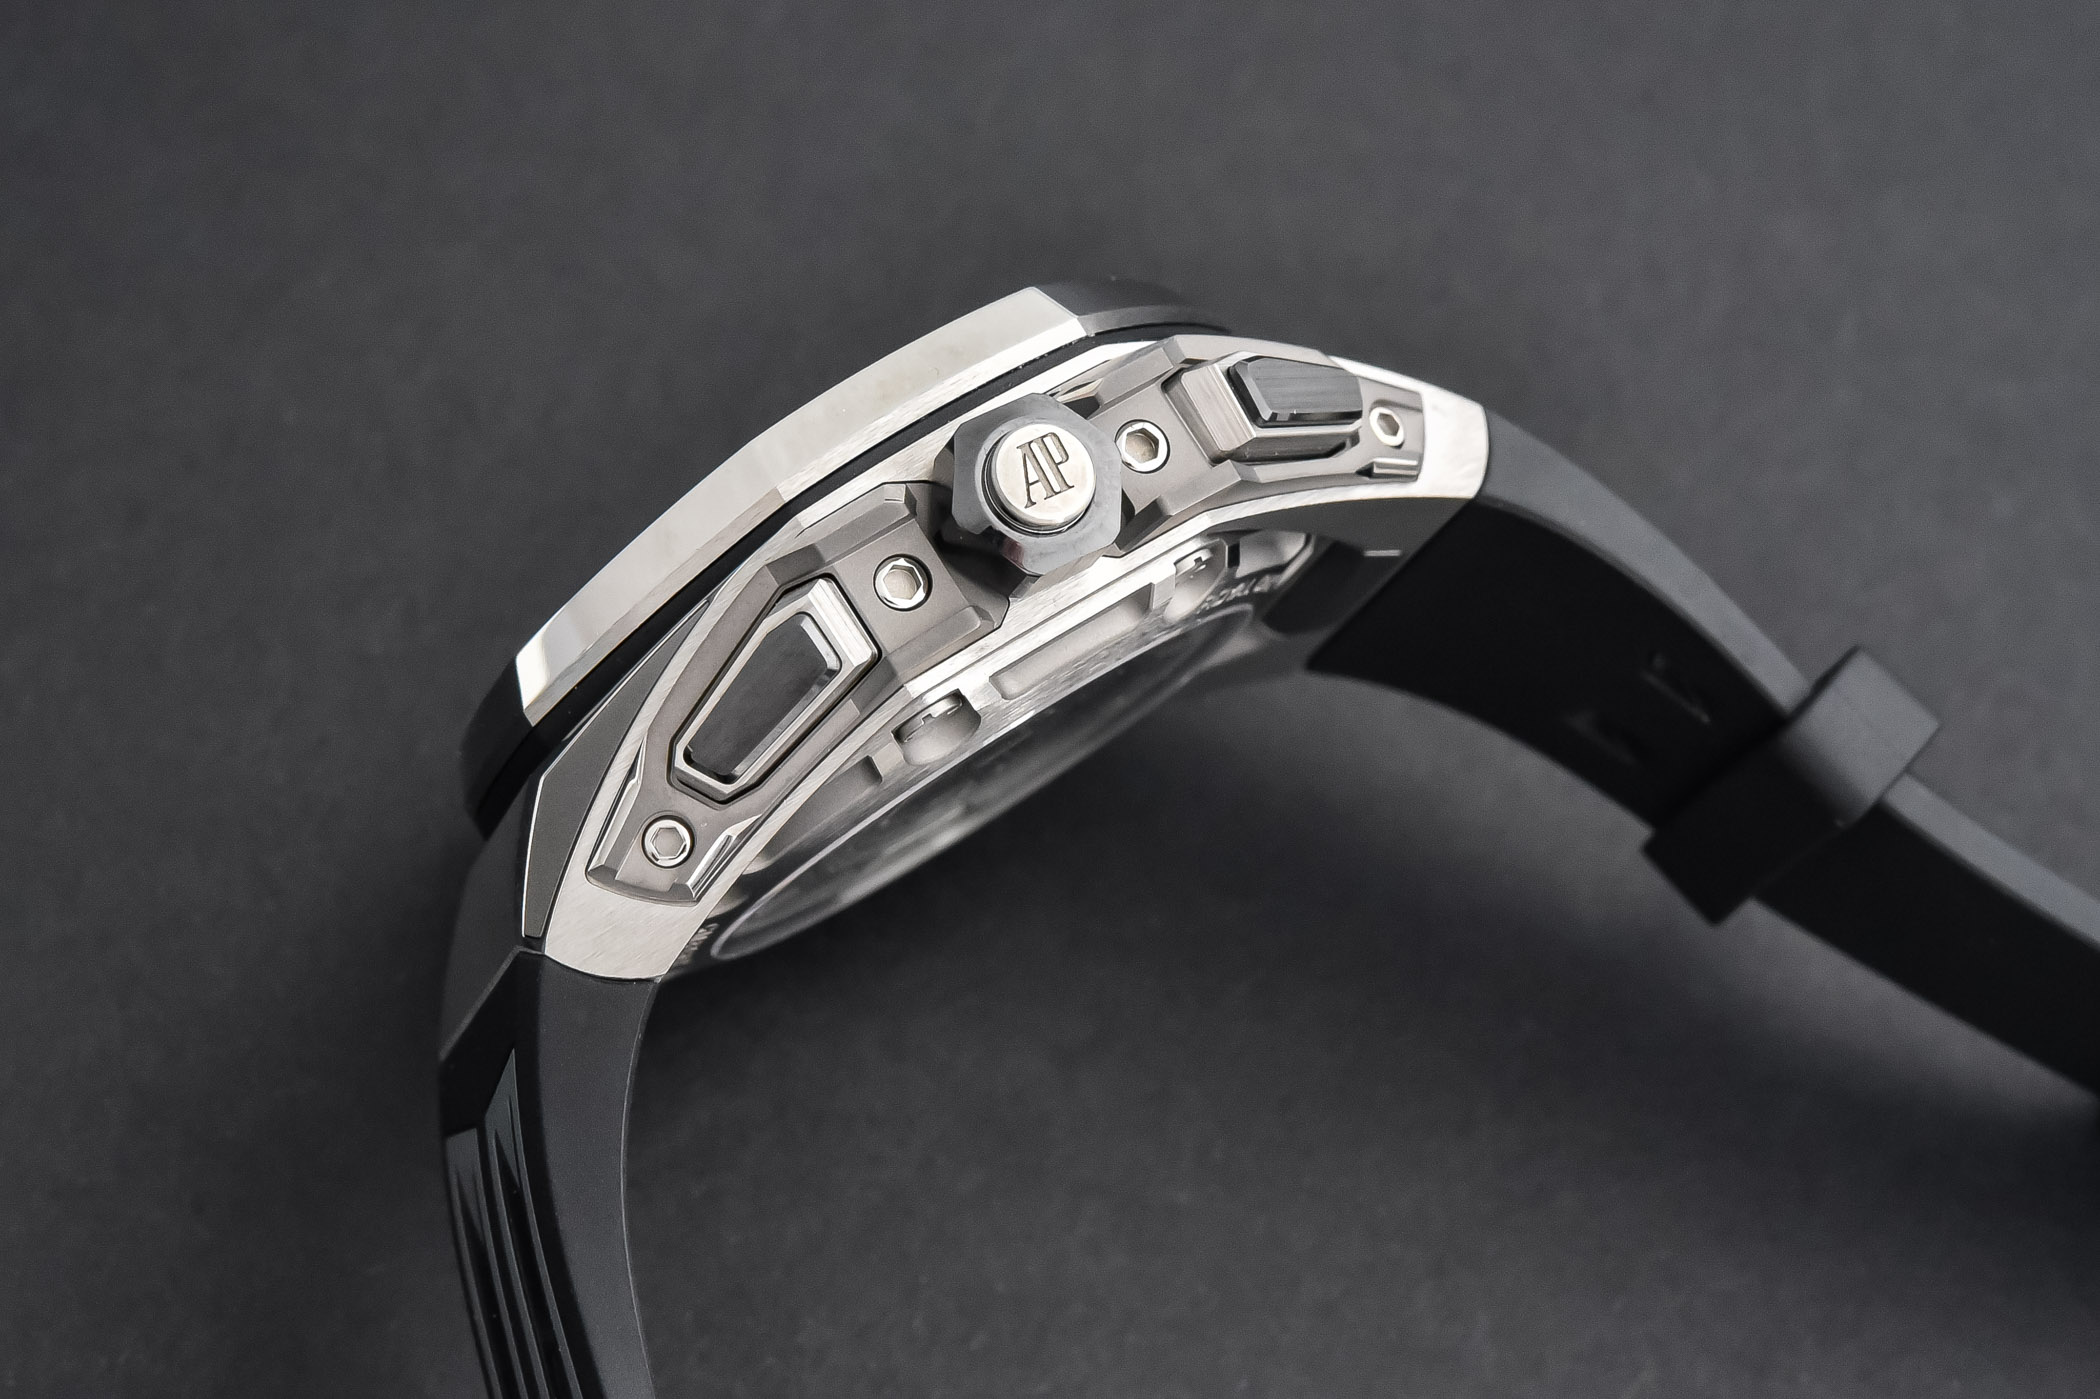 Audemars Piguet Royal Oak Concept Split-Seconds Chronograph GMT Large Date 26650TI